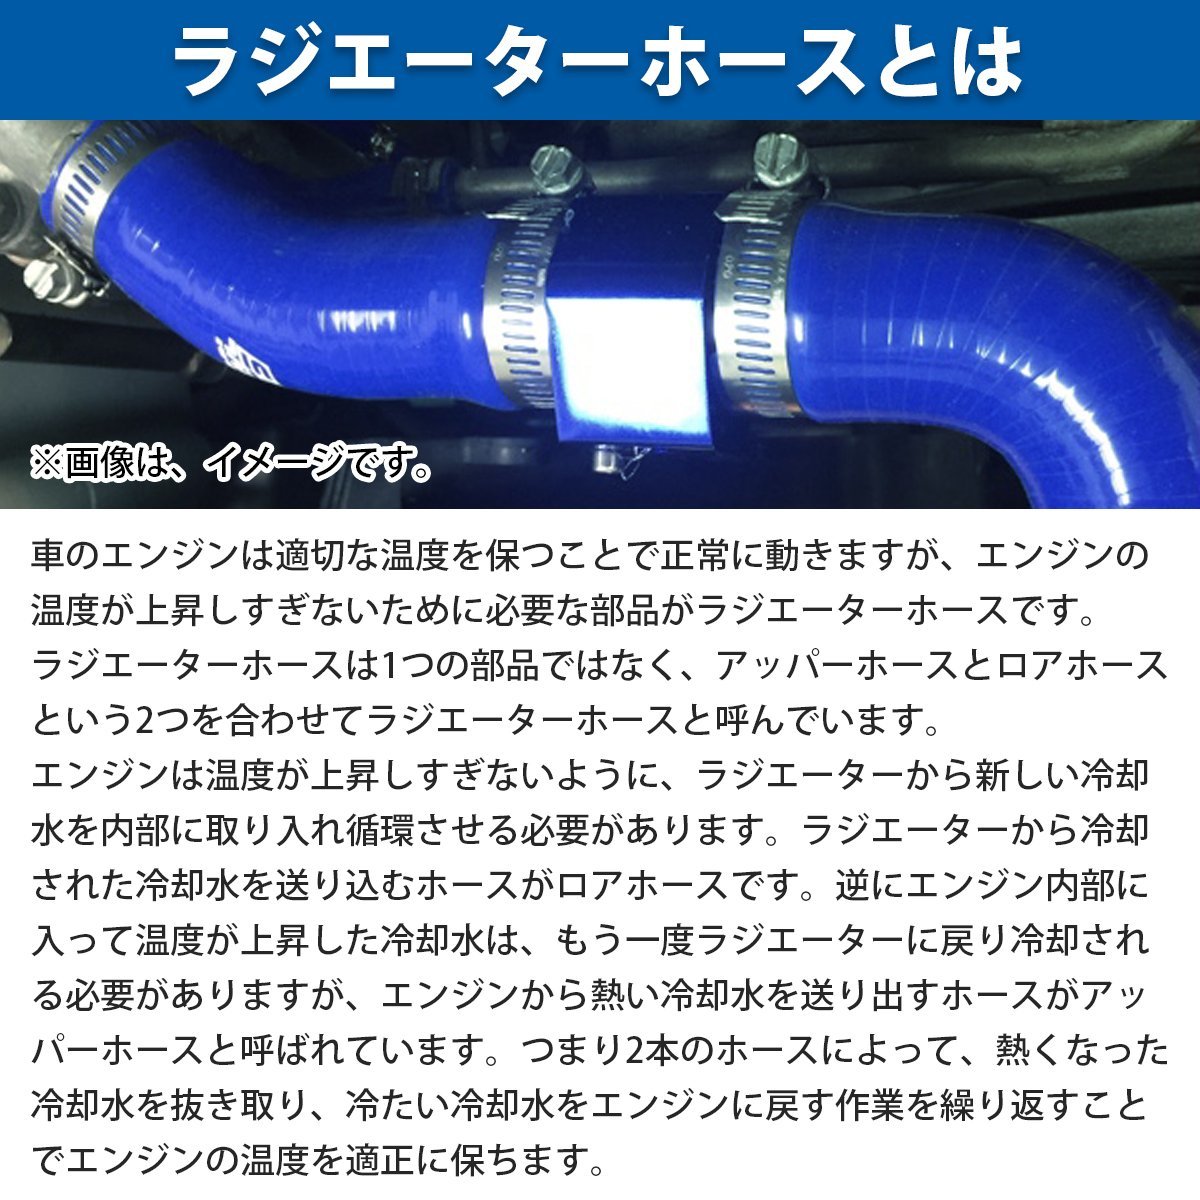 【新品即納】 スズキ ジムニー JA11 JA71 ラジエーターホース 3P ブルー 耐熱 耐久 4層シリコン ホース ラジエター アッパー ロア F6A MT_画像3